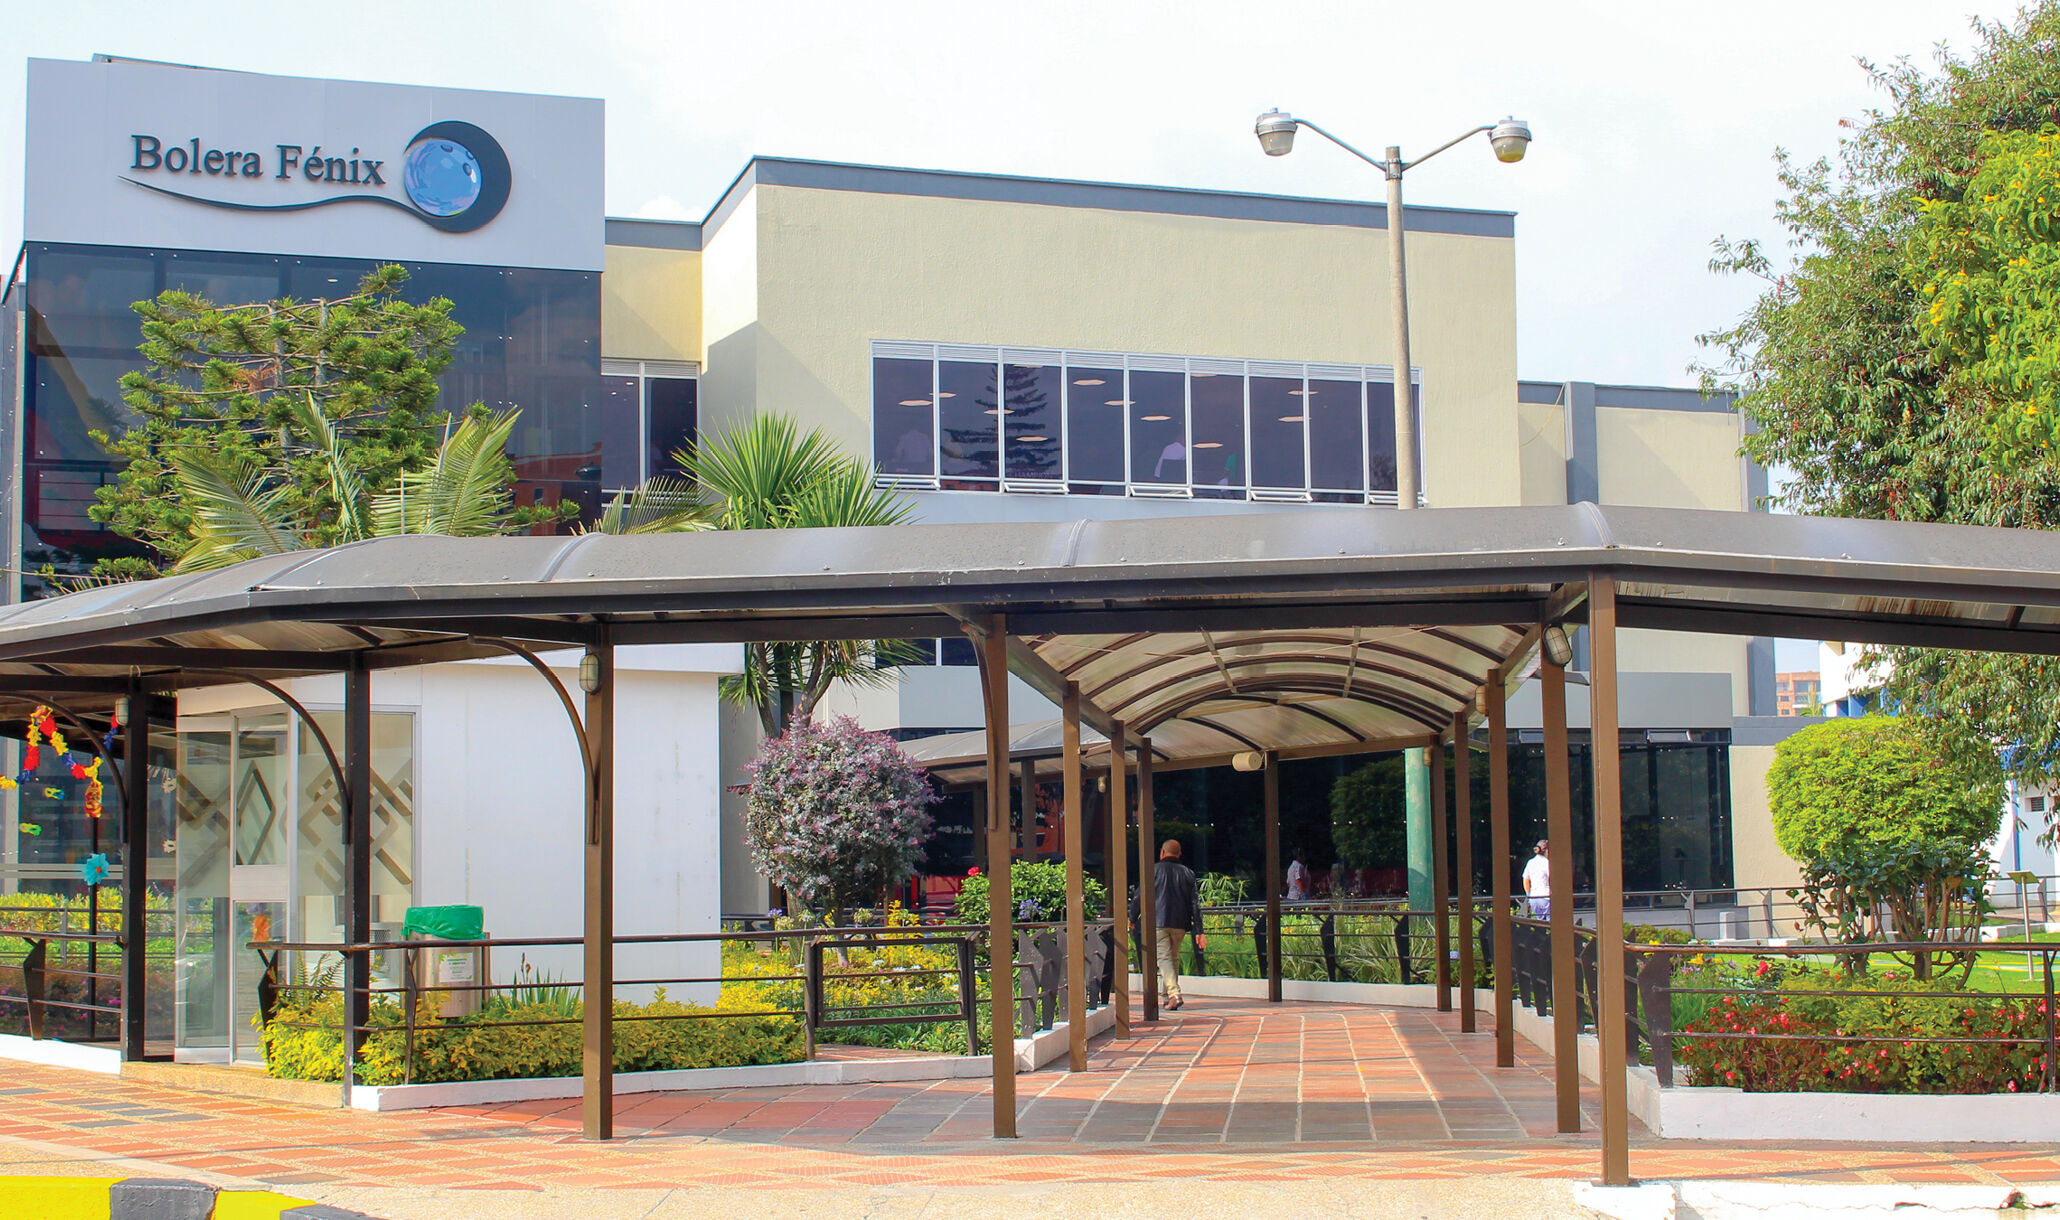 Circulo de Suboficiales, Bogota, Colombia - Bolera Fenix Entrance-1